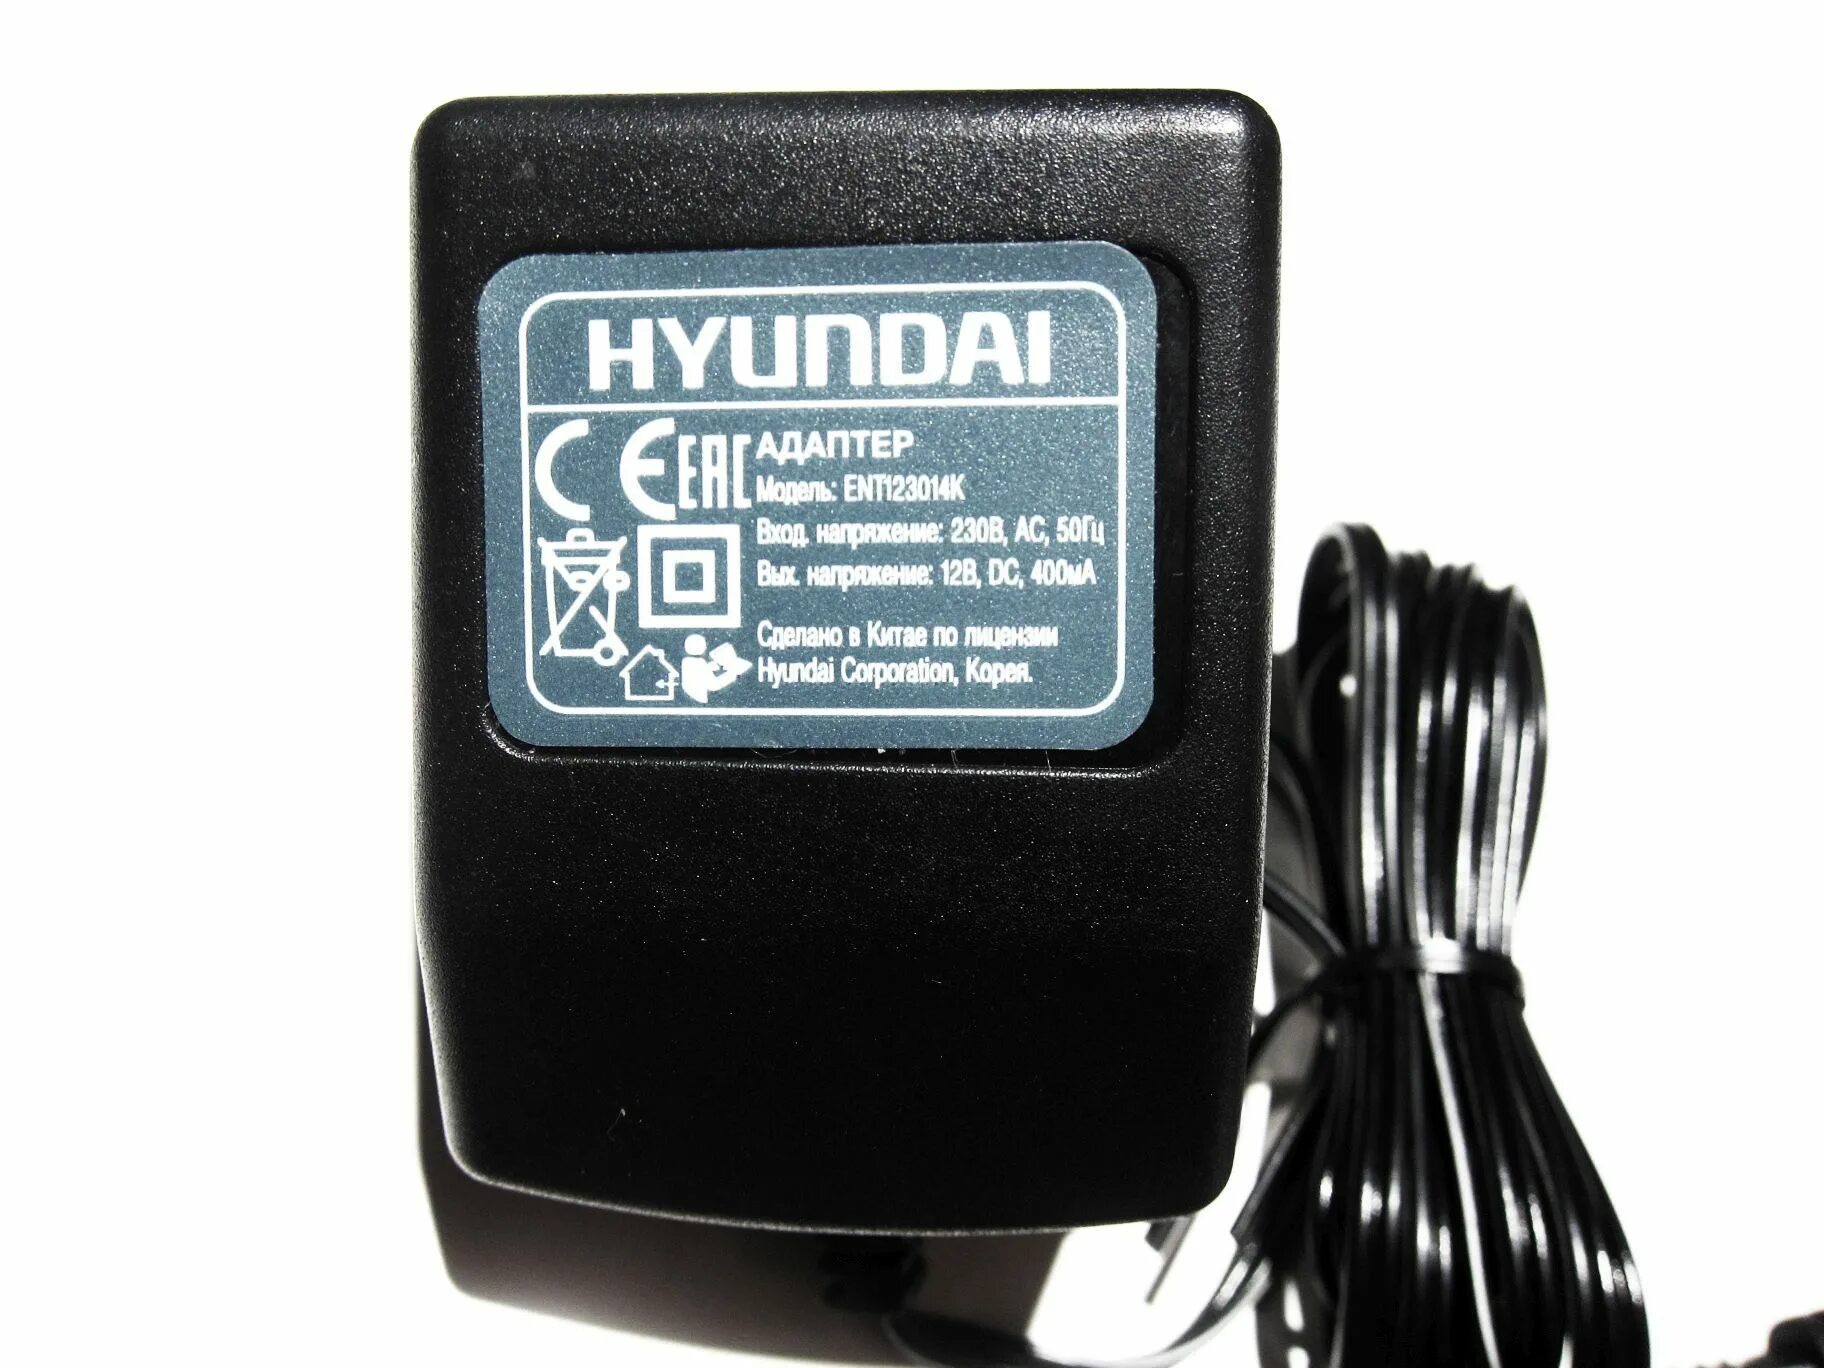 Зарядное Hyundai ent123014k. Ent123015k зарядное Hyundai. Зарядное для шуруповерта Hyundai ent123014k. Зарядка для шуруповерта Hyundai a1201. Купить зарядное для шуруповерта 12 вольт